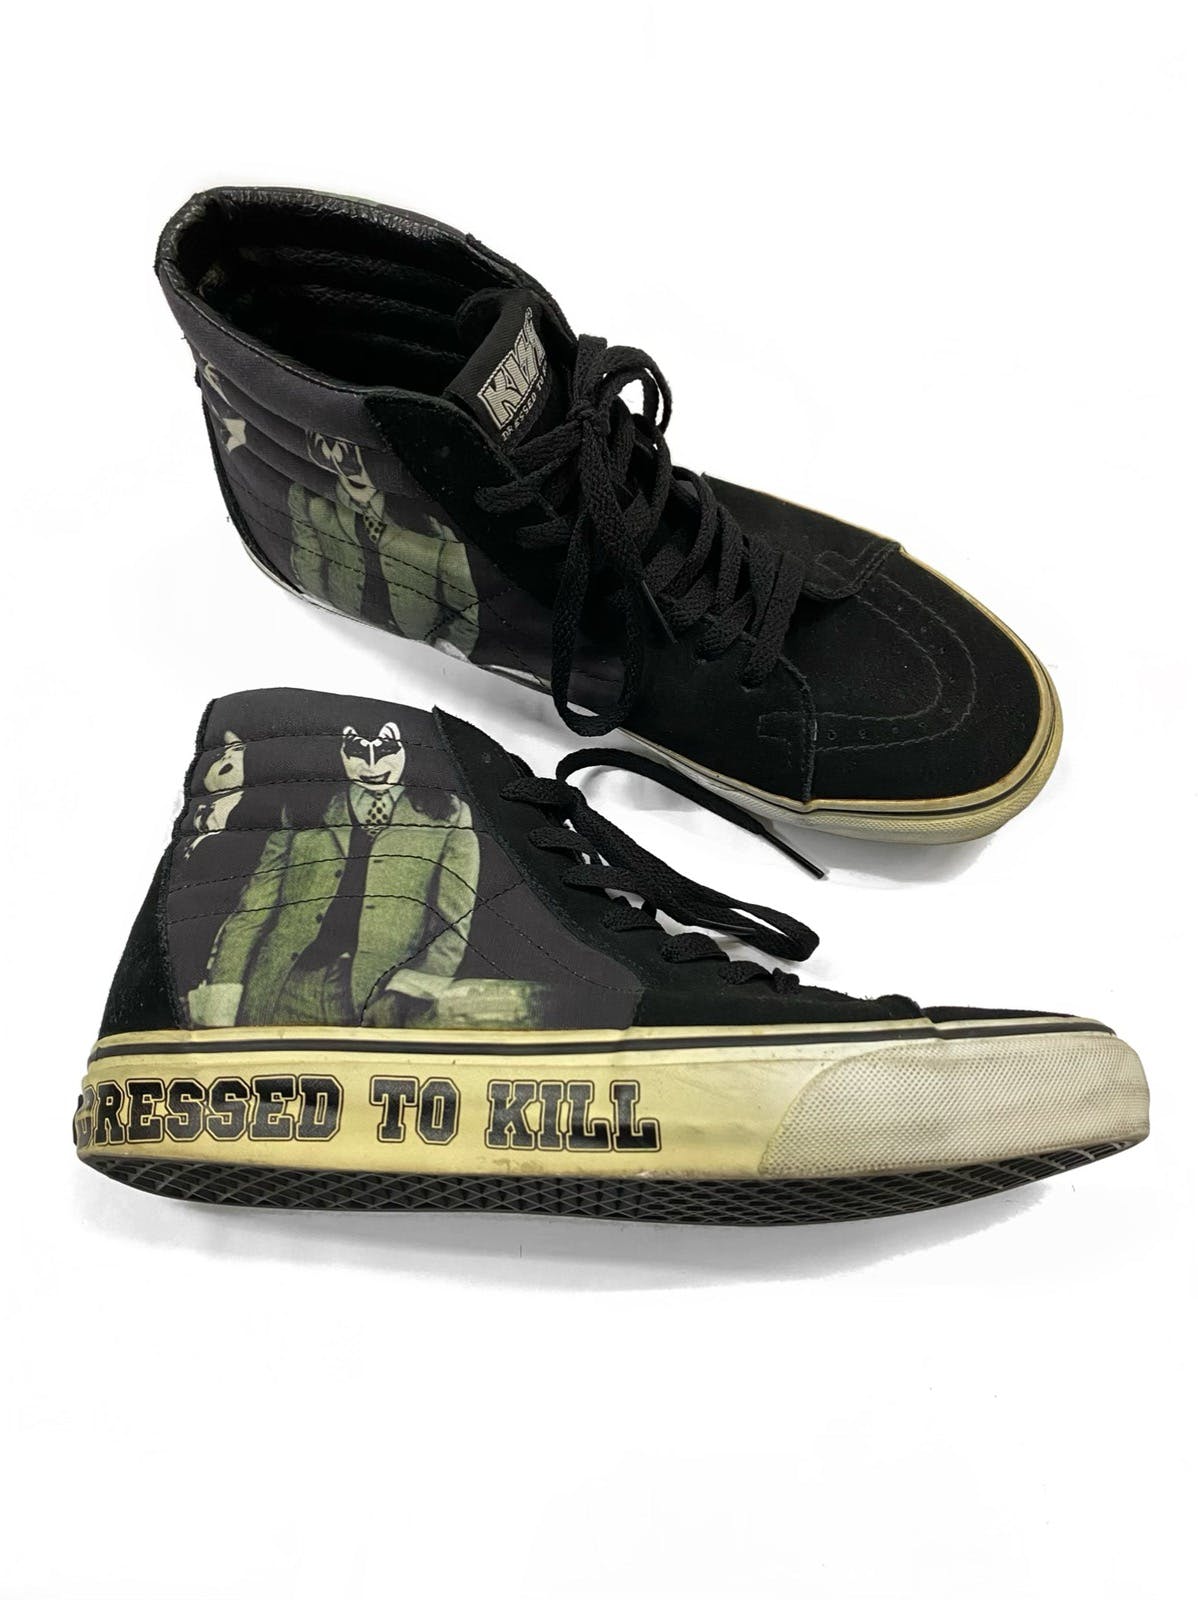 Vans x Kiss Dressed To Kill High Cut Old Skool 2008 - 1